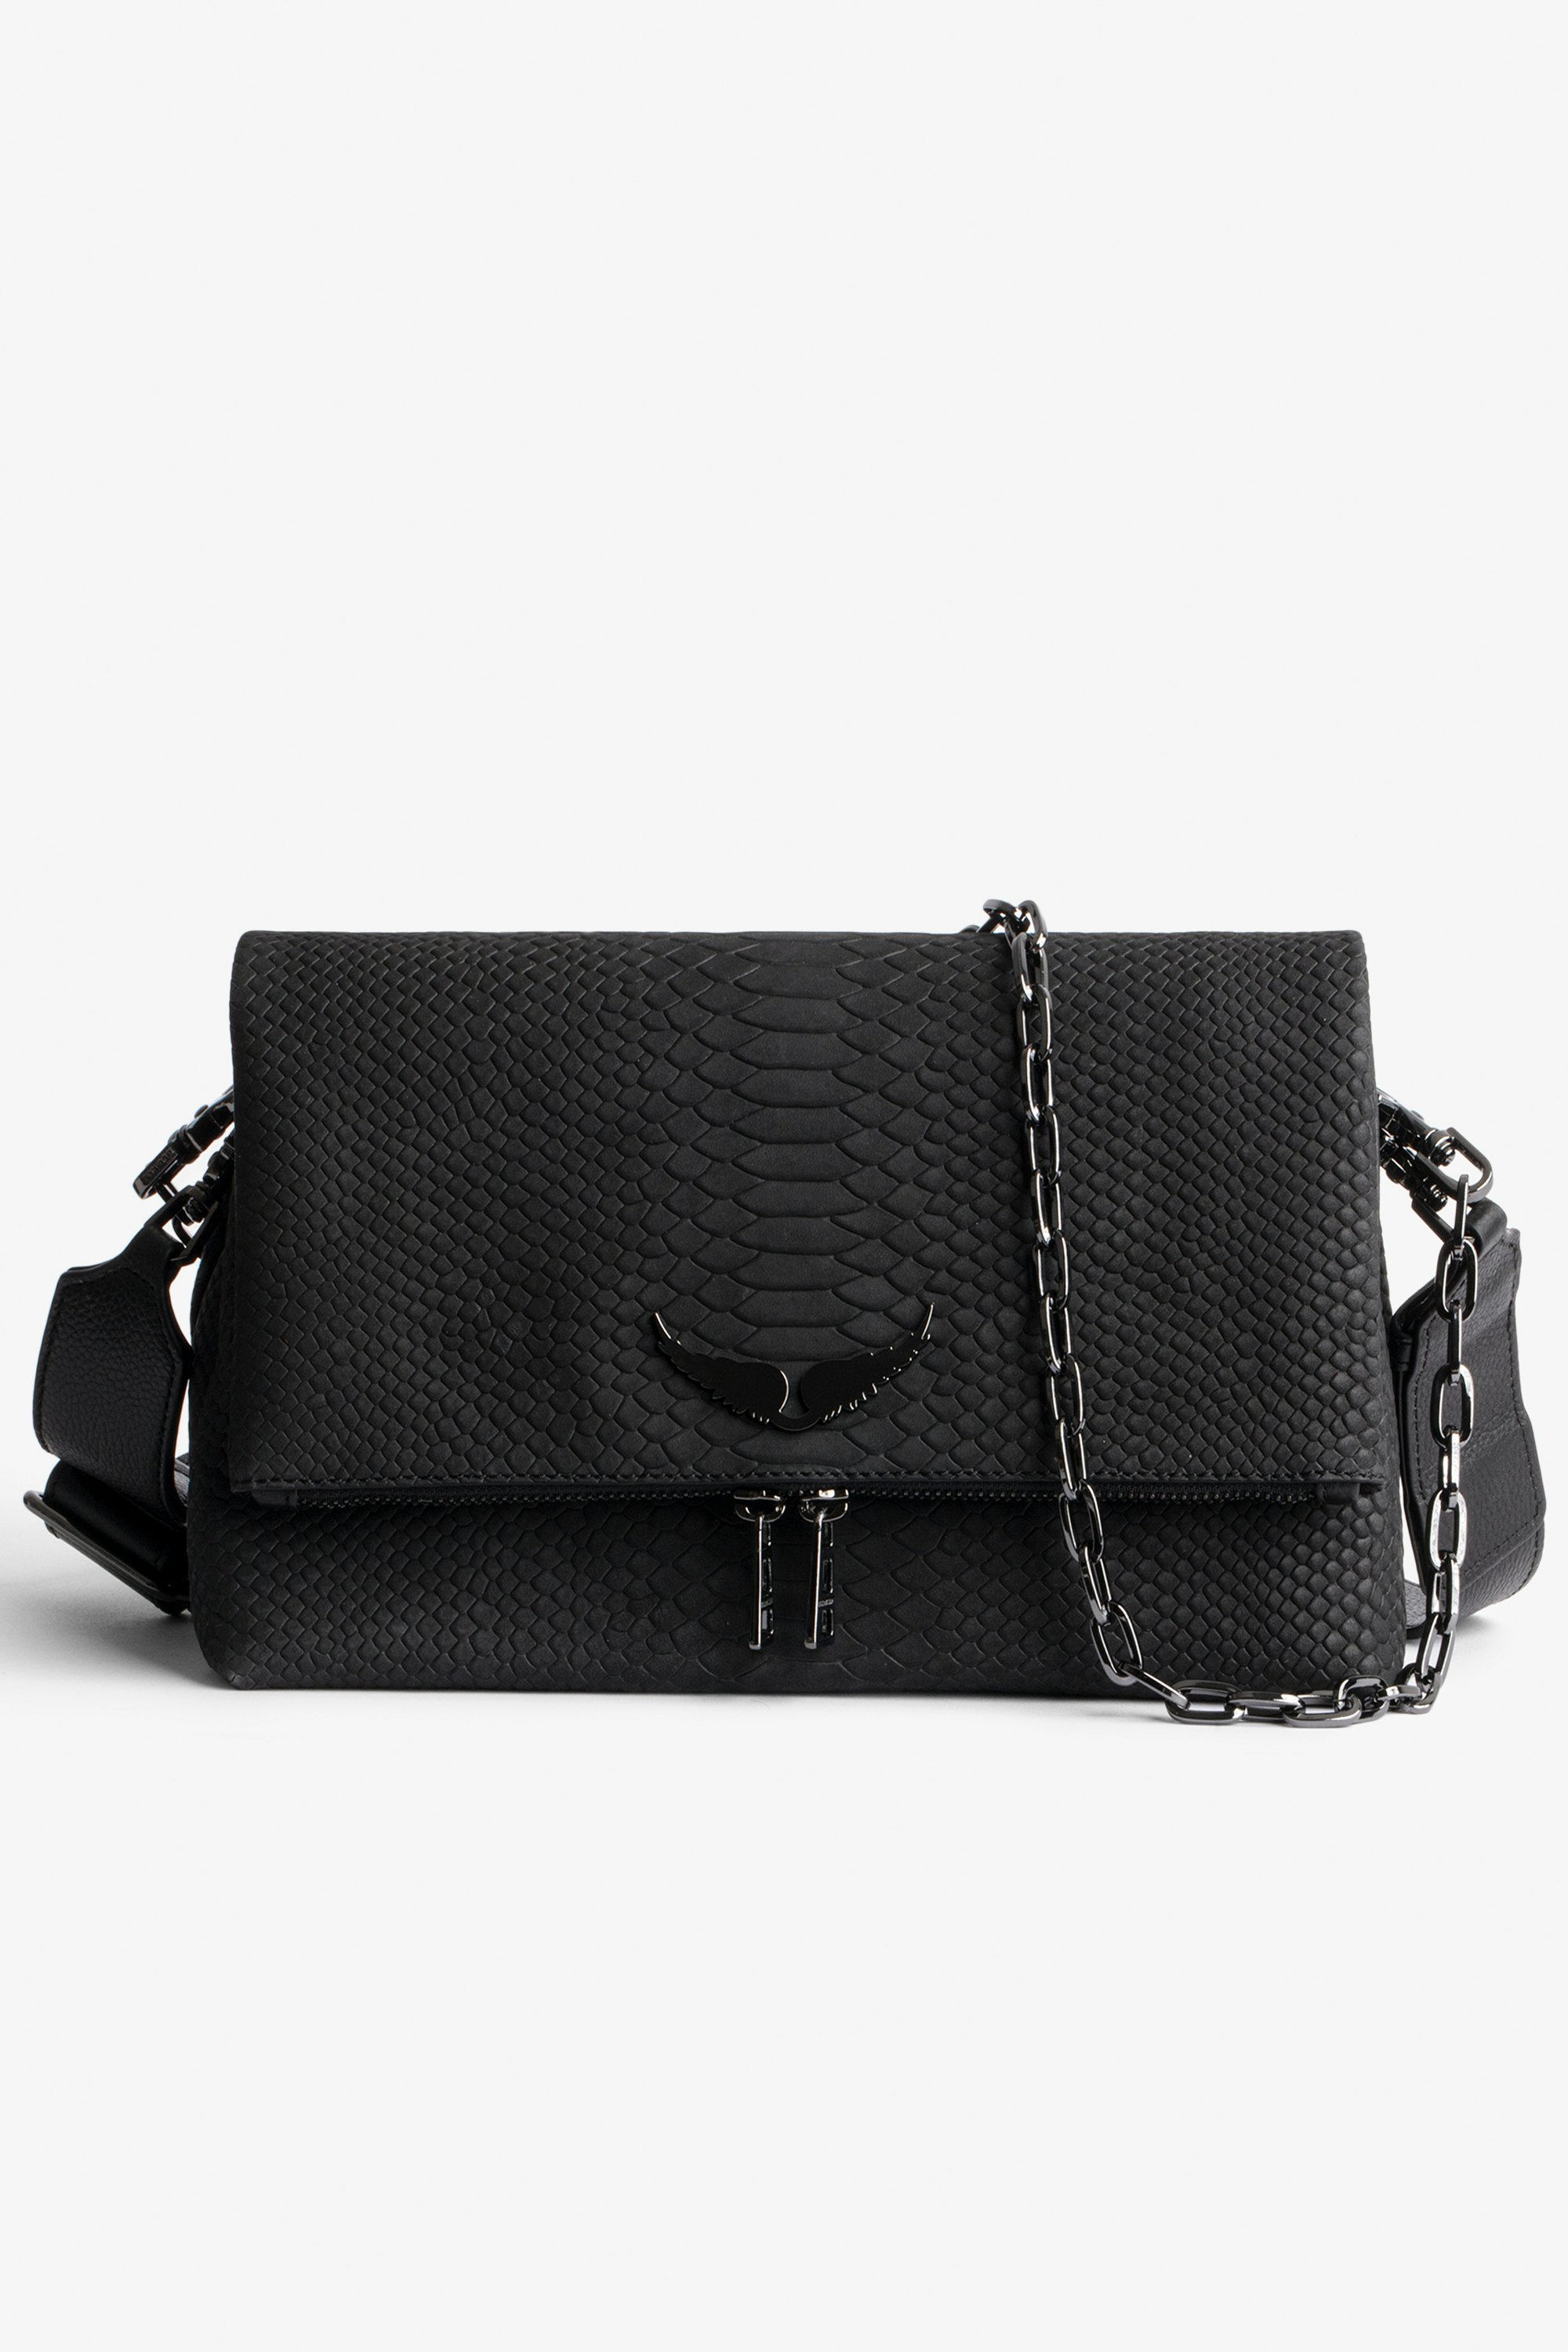 Tasche Rocky Soft Savage Damen-Handtasche aus schwarzem Leder in Python-Optik mit Ketten-Schulterriemen